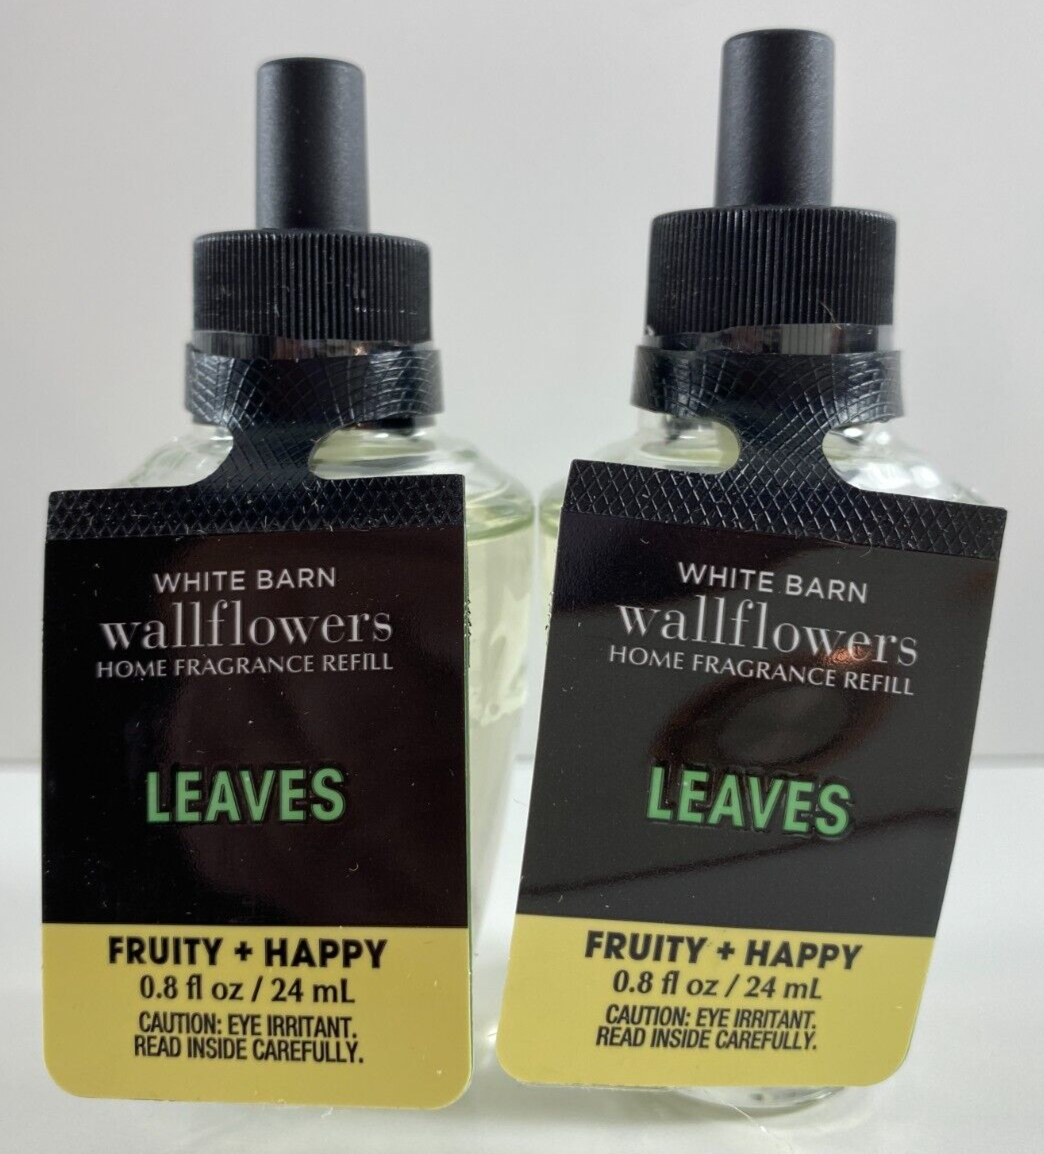 Lot of 2 White Barn Bath Body Wallflowers Fragrance Refills .8 fl oz LEAVES - $20.78